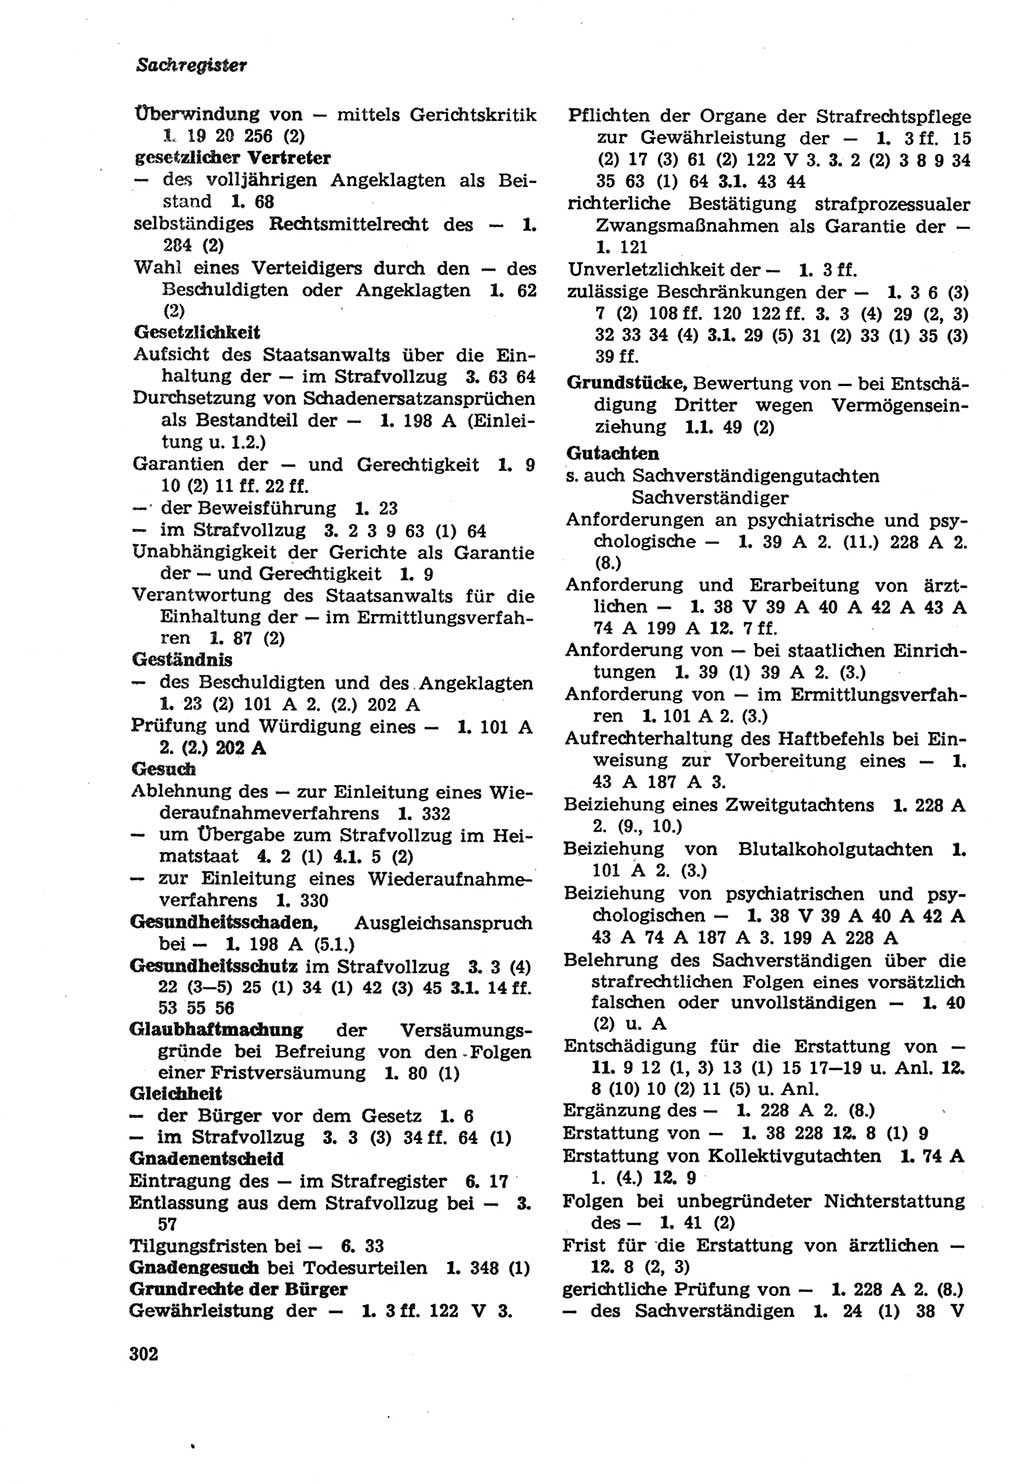 Strafprozeßordnung (StPO) der Deutschen Demokratischen Republik (DDR) sowie angrenzende Gesetze und Bestimmungen 1979, Seite 302 (StPO DDR Ges. Best. 1979, S. 302)